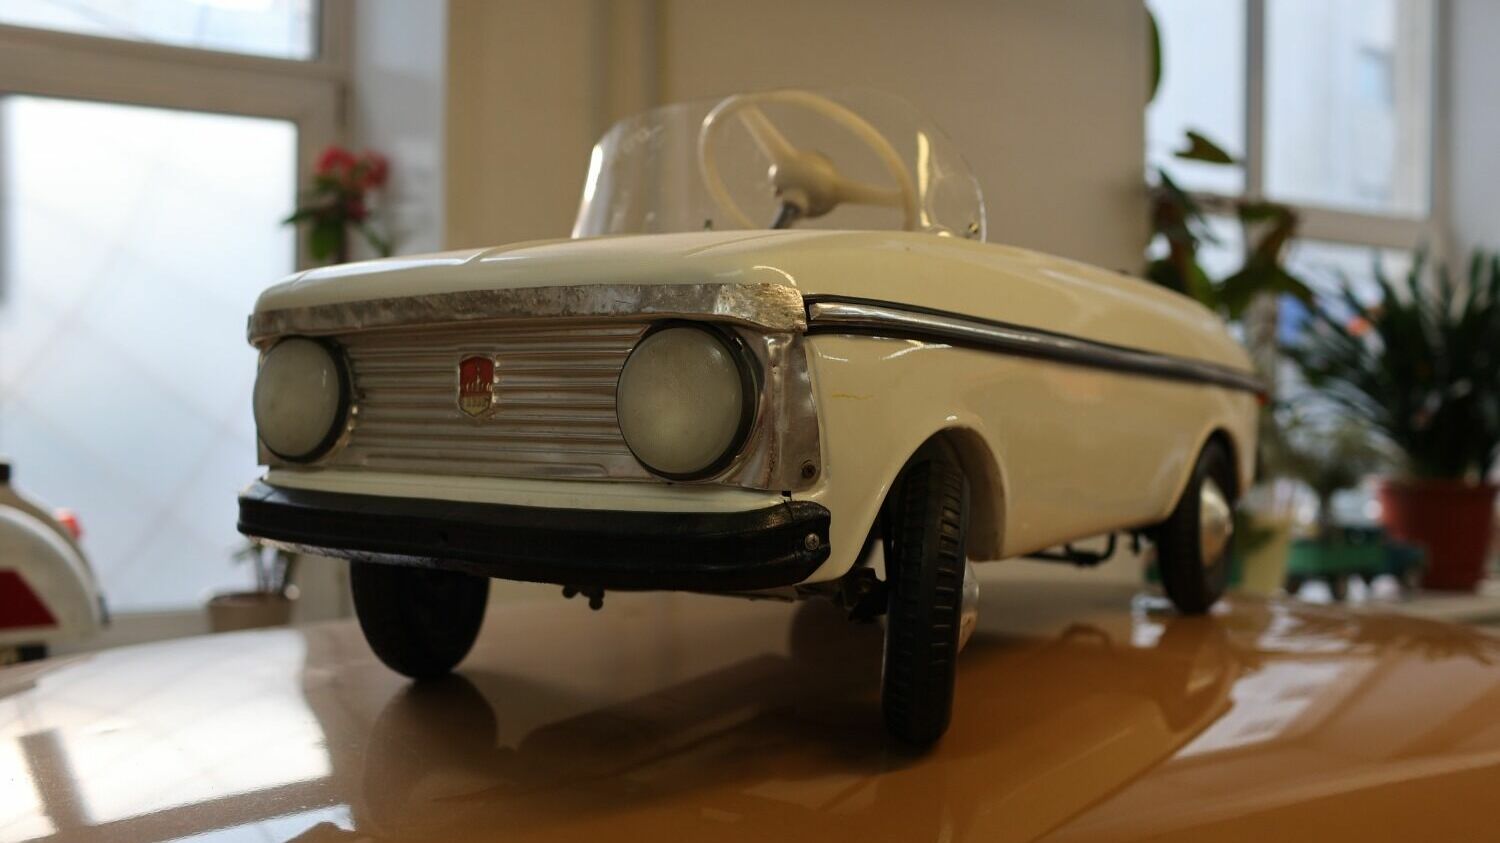 Детский педальный автомобиль "Москвич". Выпускался с 1973 по 1994 годы Автомобильным Заводом Имени Ленинского Комсомола.